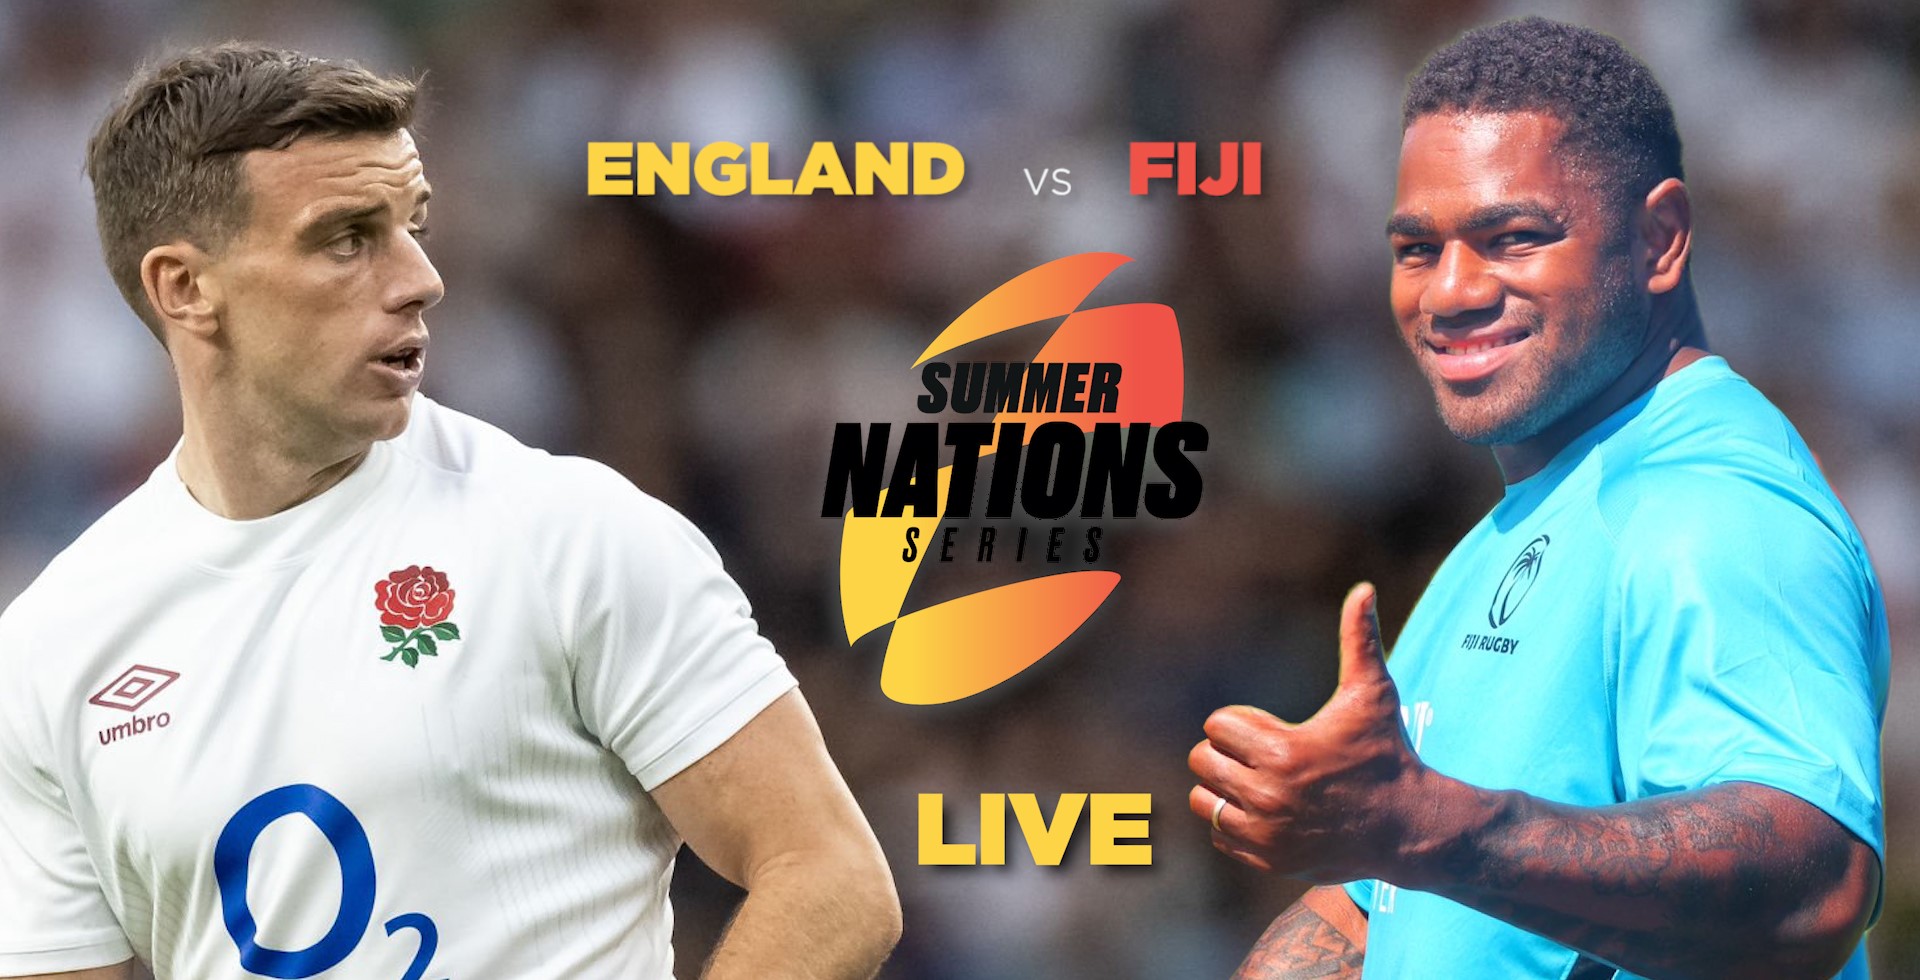 England vs Fiji LIVE